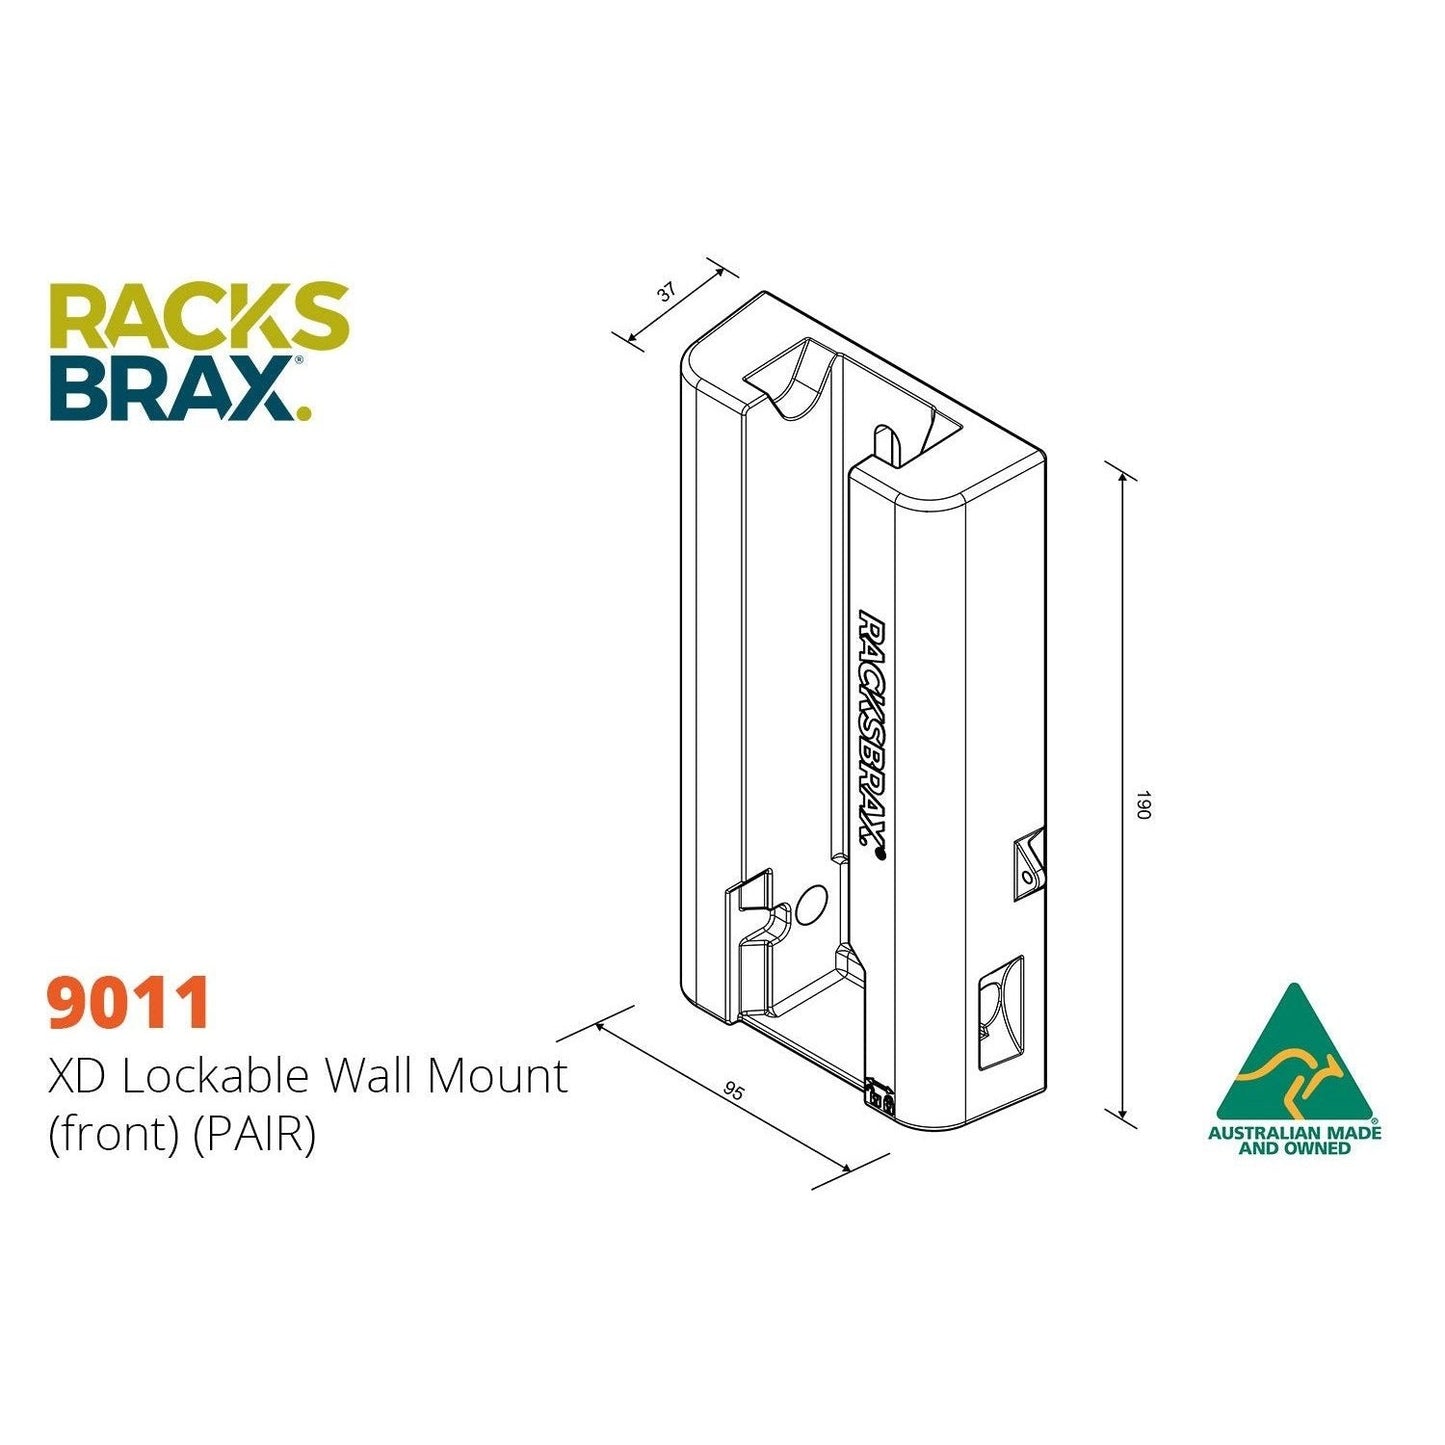 XD lockable wall mount -RacksBrax - AMD Touring